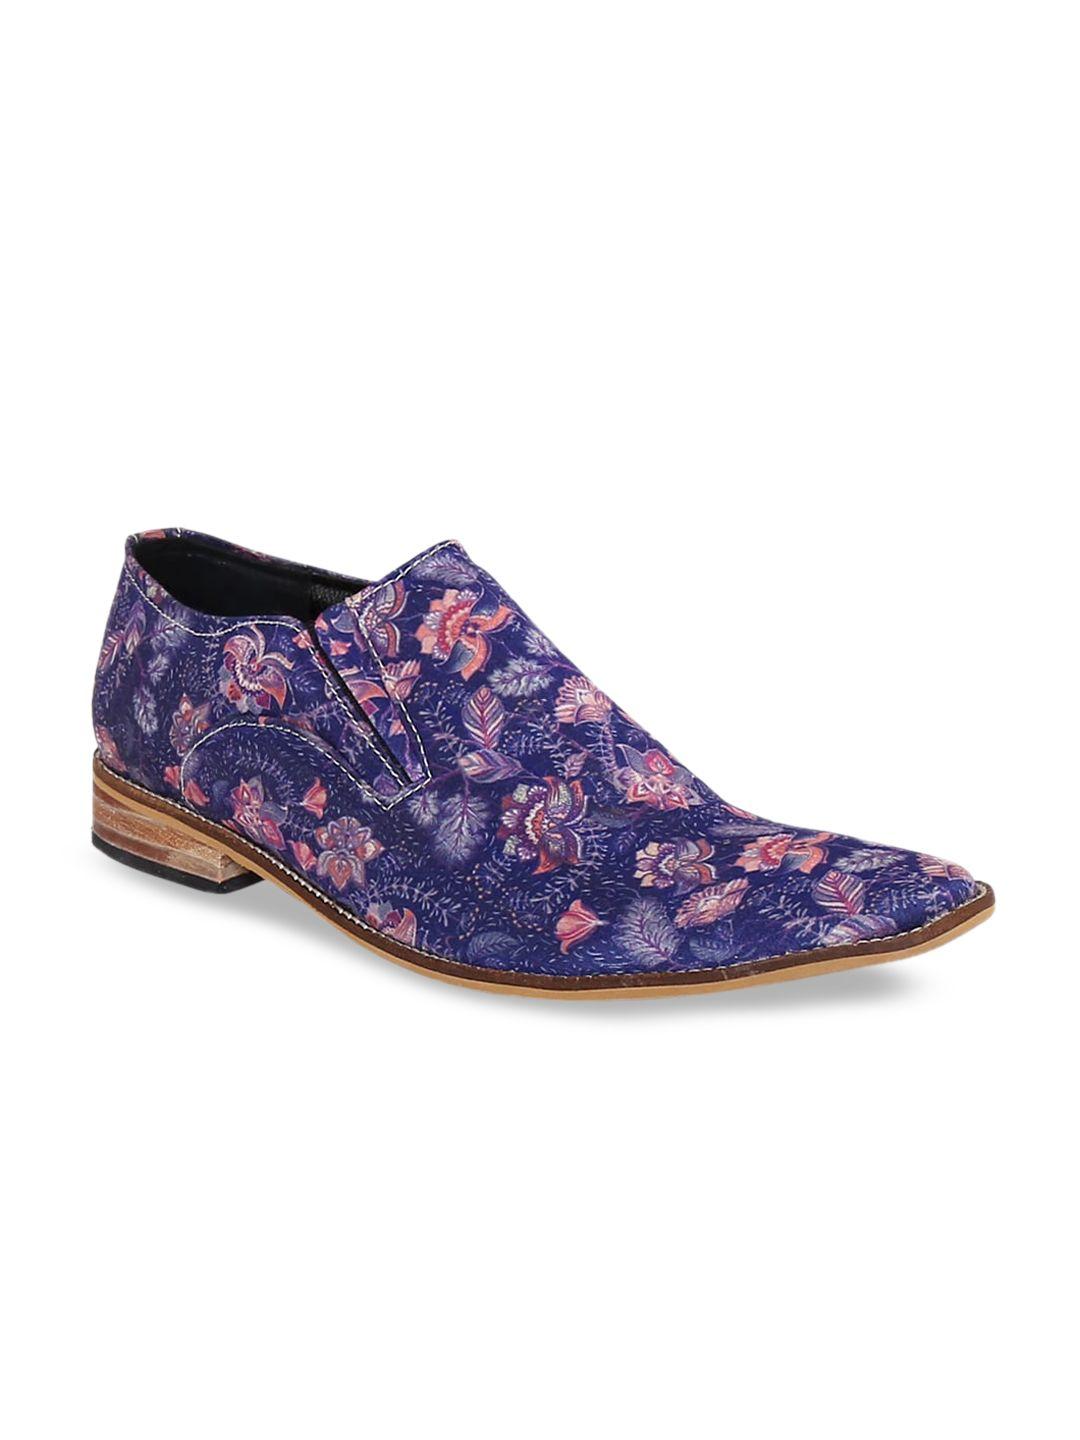 kanvas men purple floral printed slip-on sneakers